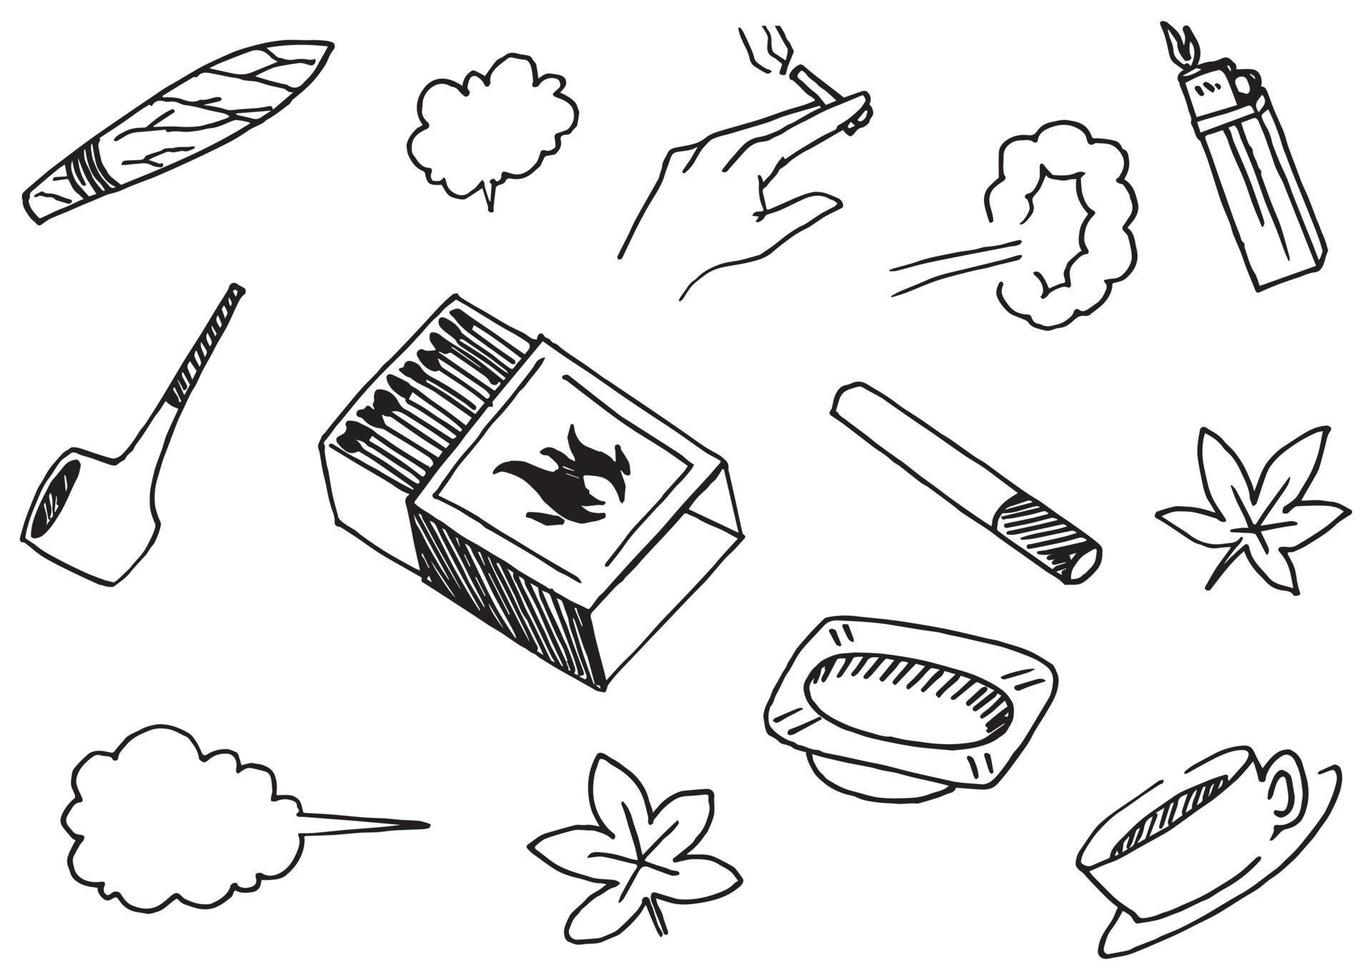 handgetekende set elementen, pijpen, lucifers, asbakken, sigaretten, tabak, sigaren en andere elementen in de hand getekende stijl voor conceptontwerp. krabbel illustratie. vectorillustratie. vector